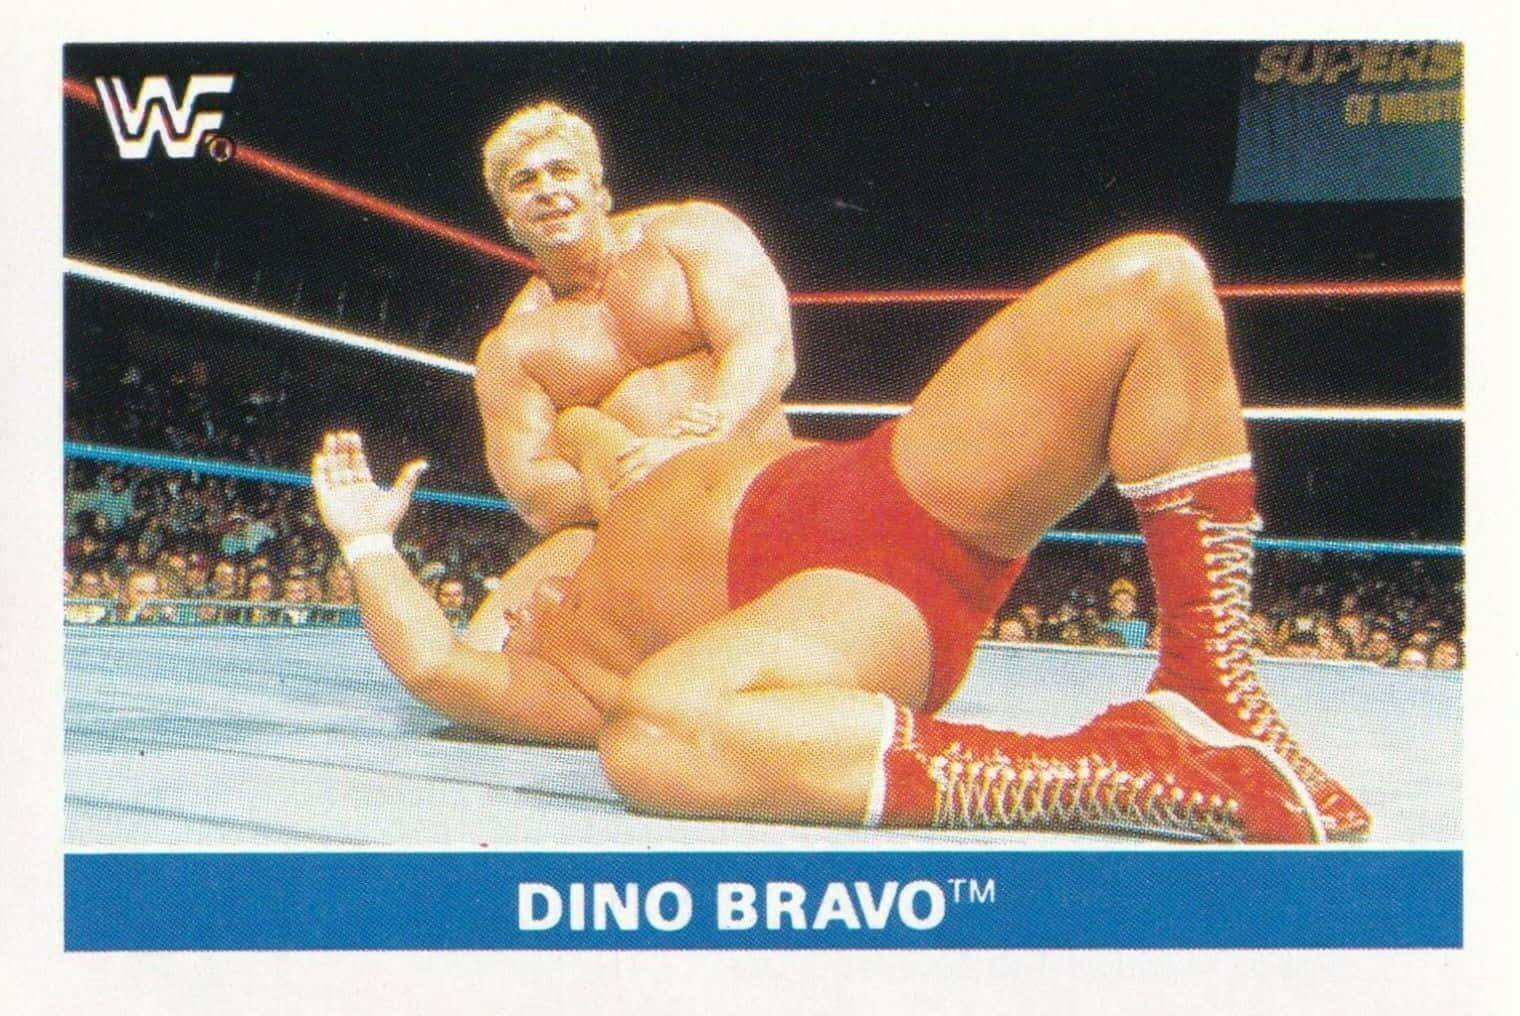 Tarjetade Lucha Libre De Dino Bravo De 1991 En La Wwf. Fondo de pantalla